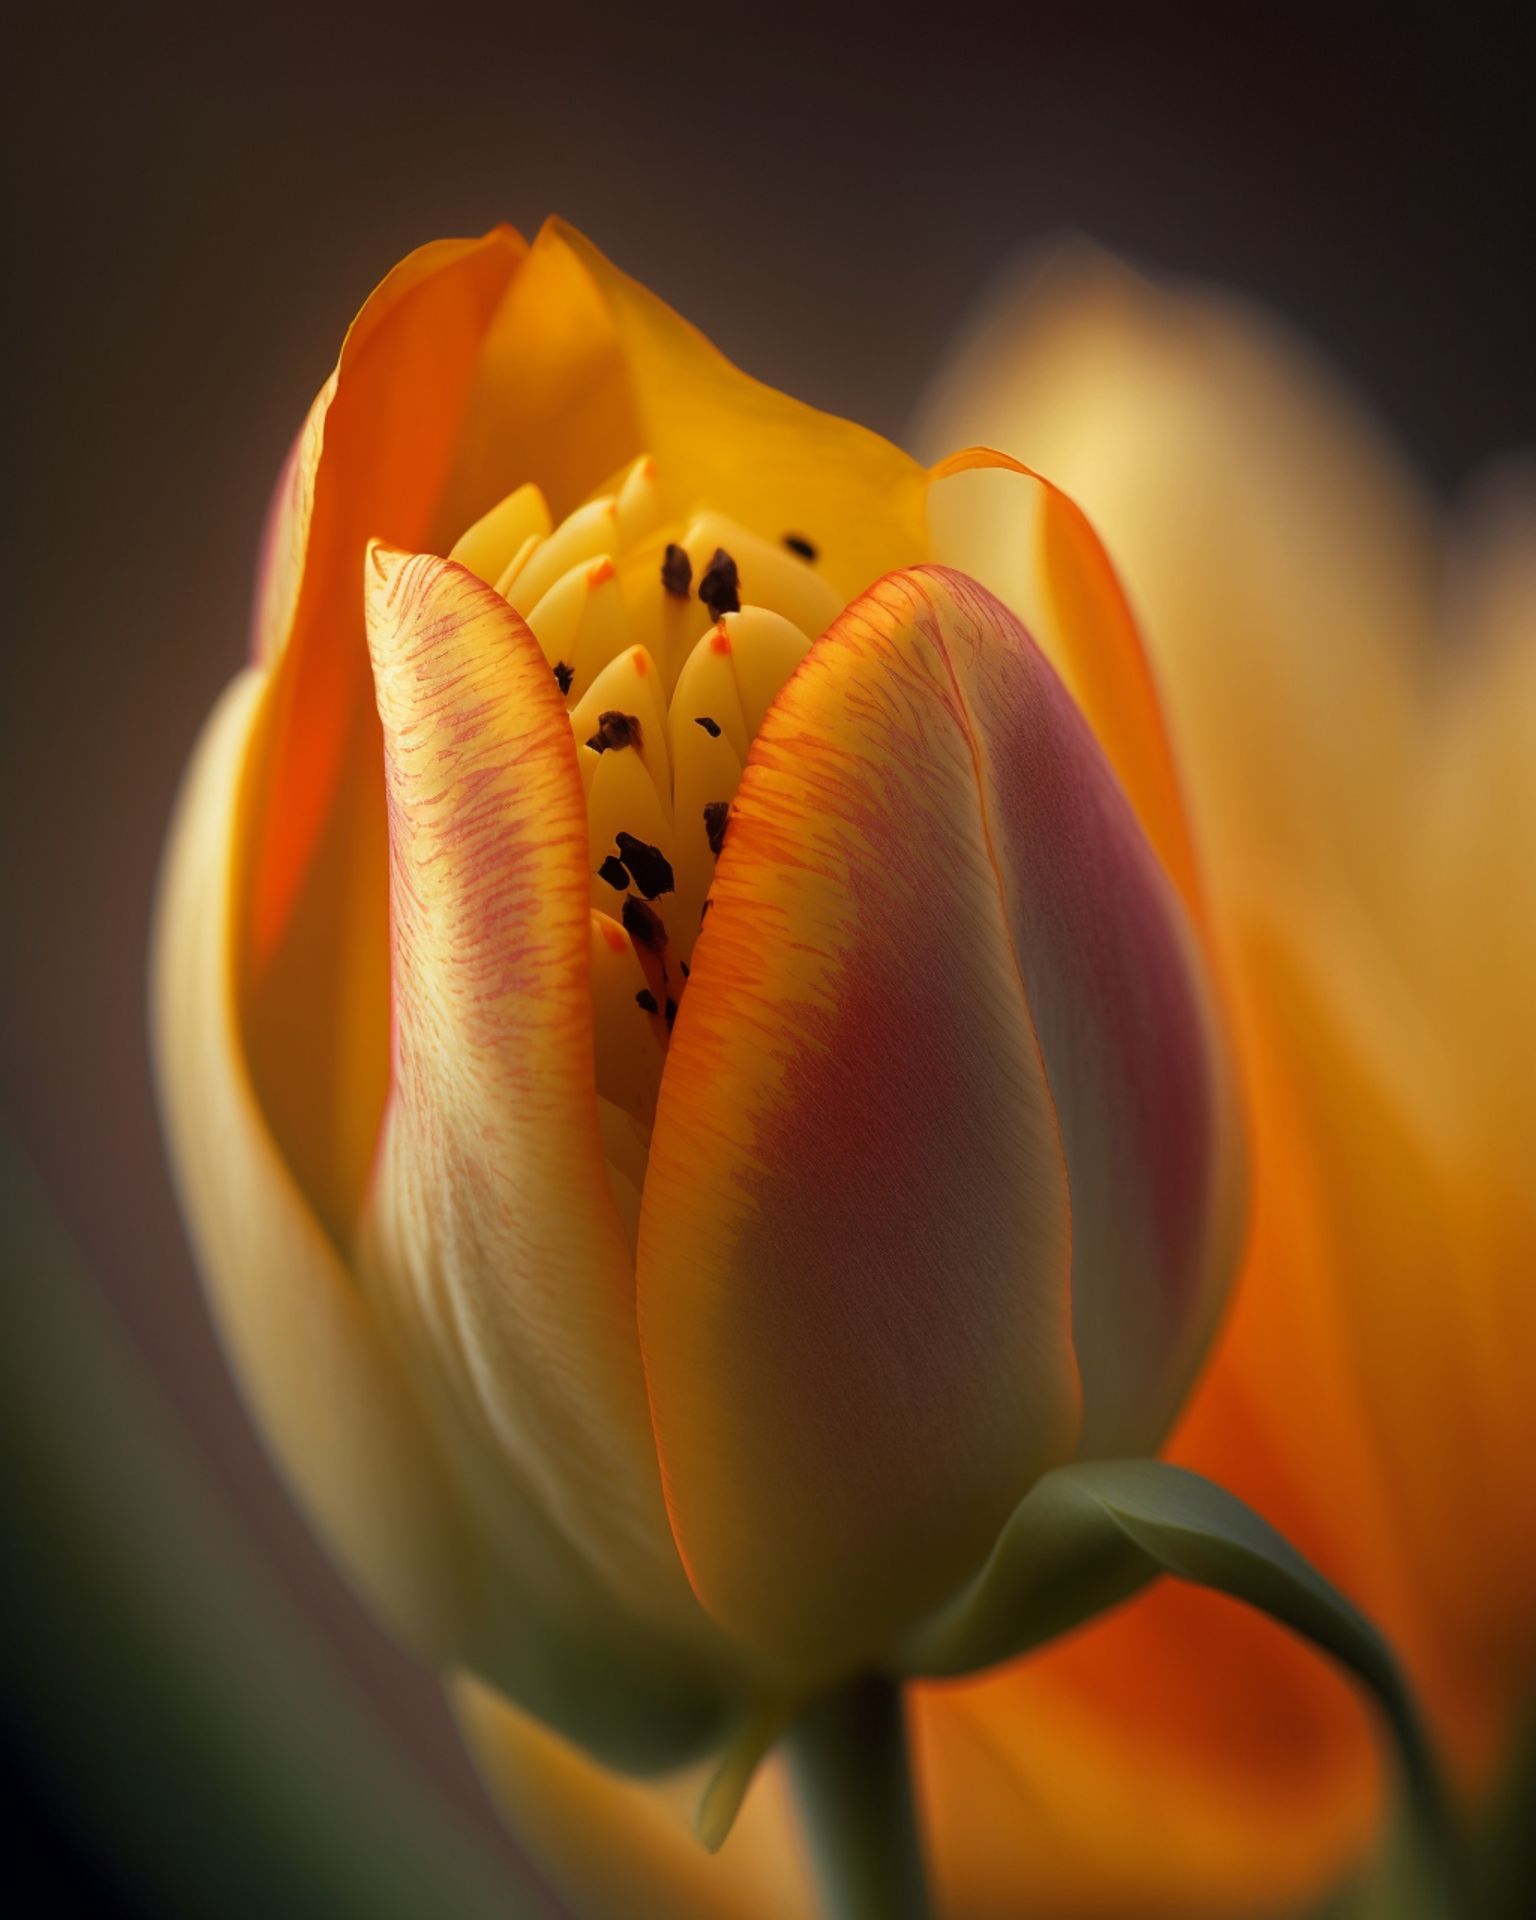 Tulipán amarillo